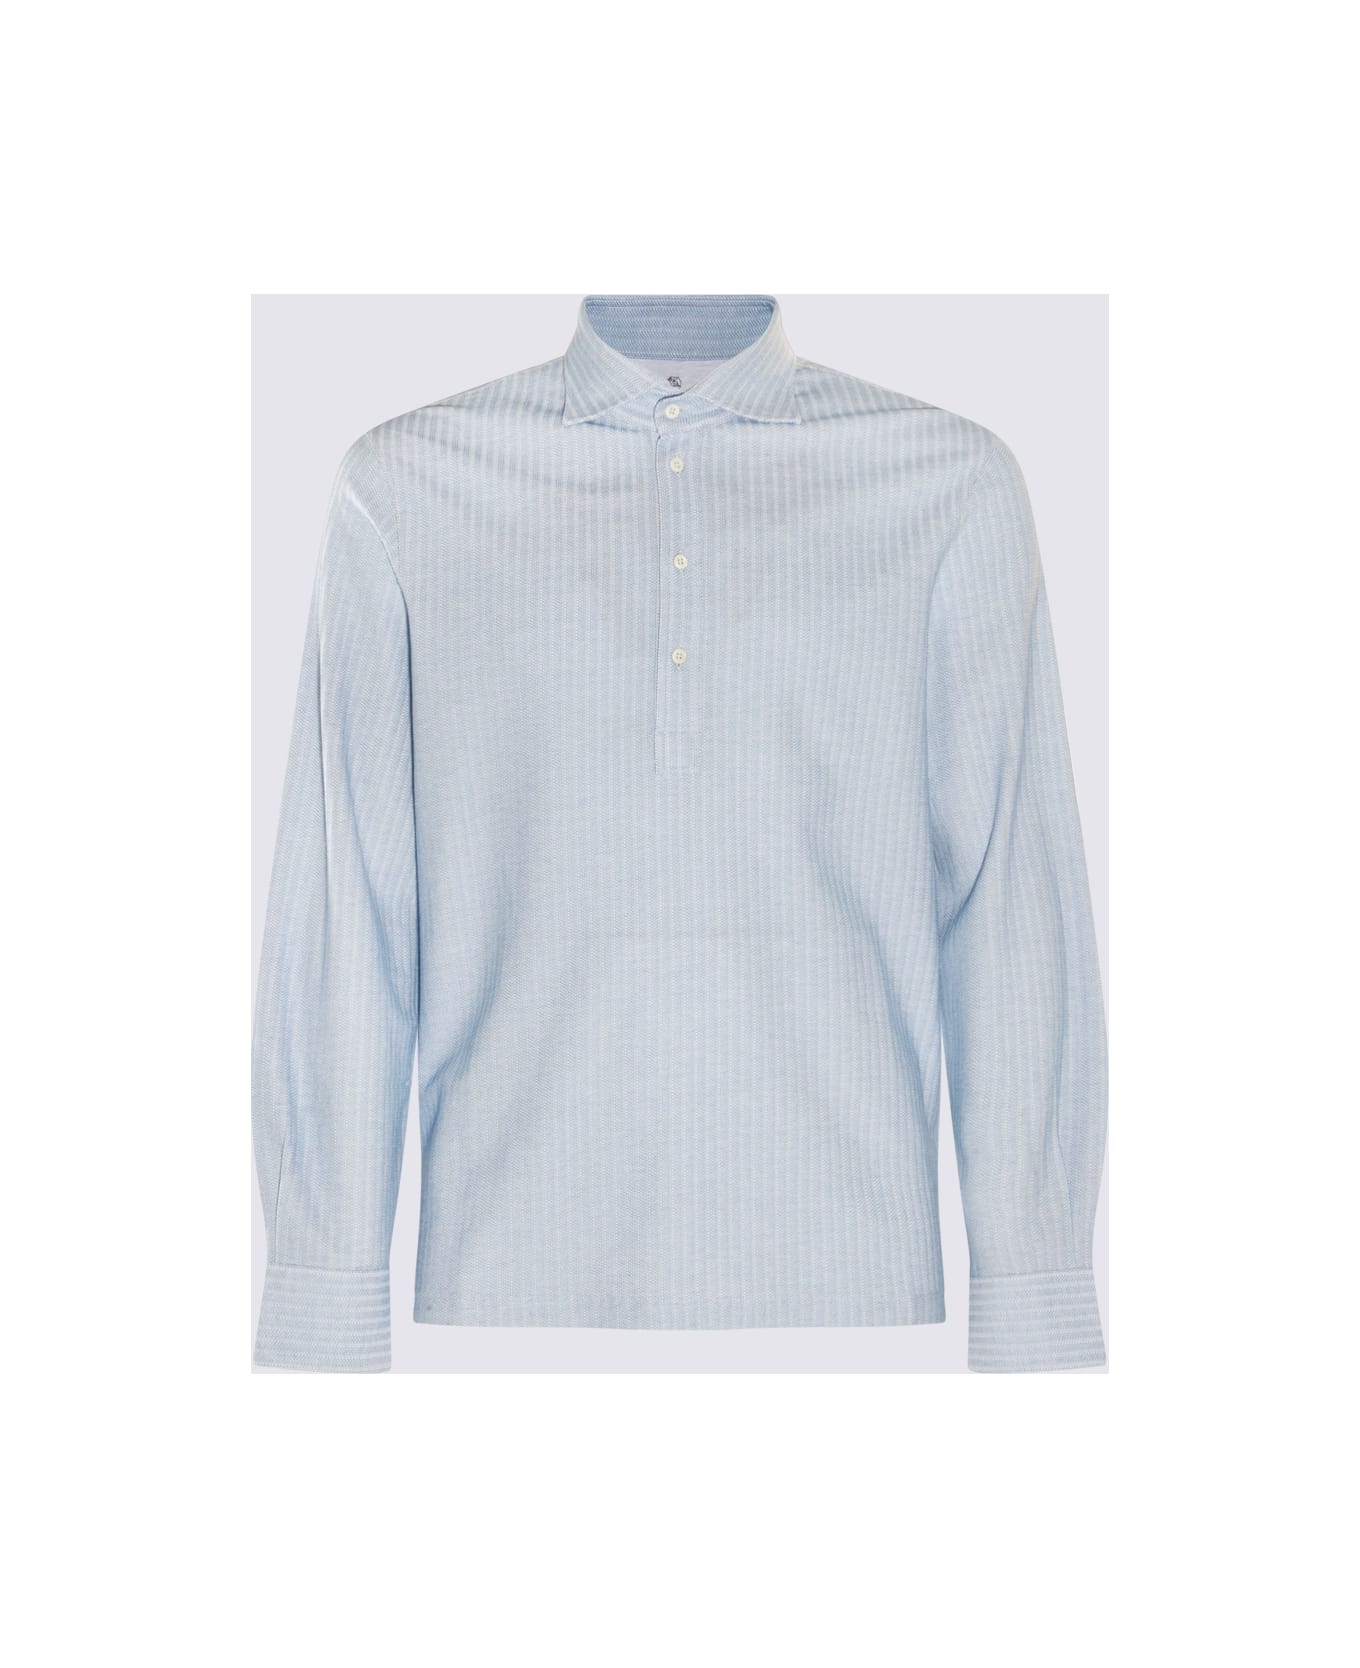 Brunello Cucinelli Light Blue Cotton And Silk Blend Polo Shirt - Blue